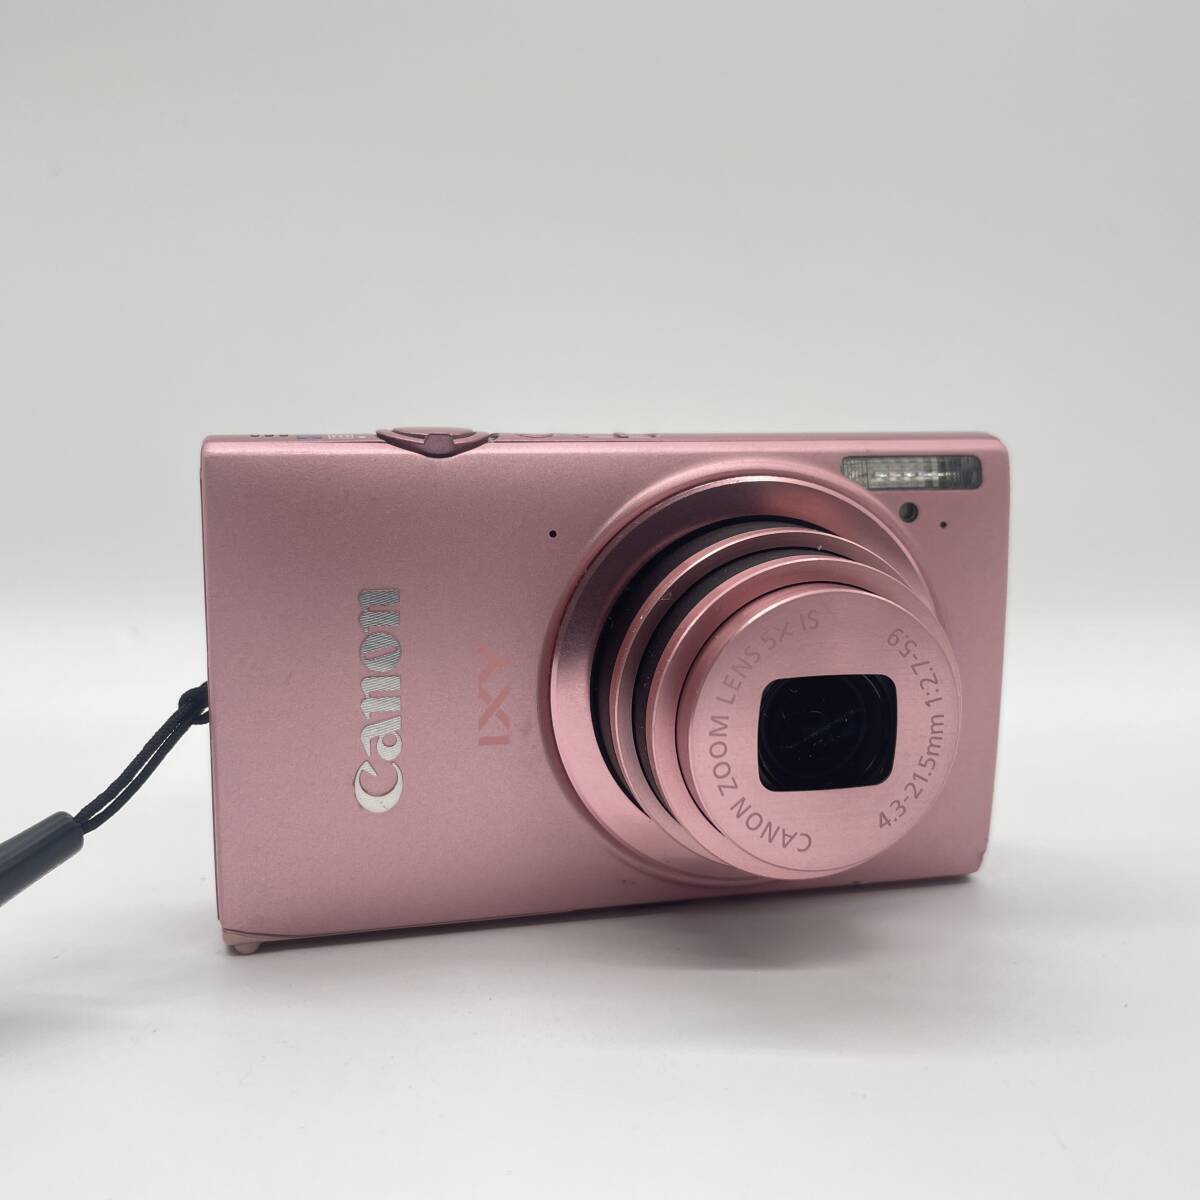 【動作確認済み】Canon IXY 430F PINK コンデジ デジカメ デジタルカメラ シャッター&フラッシュ動作OKの画像2